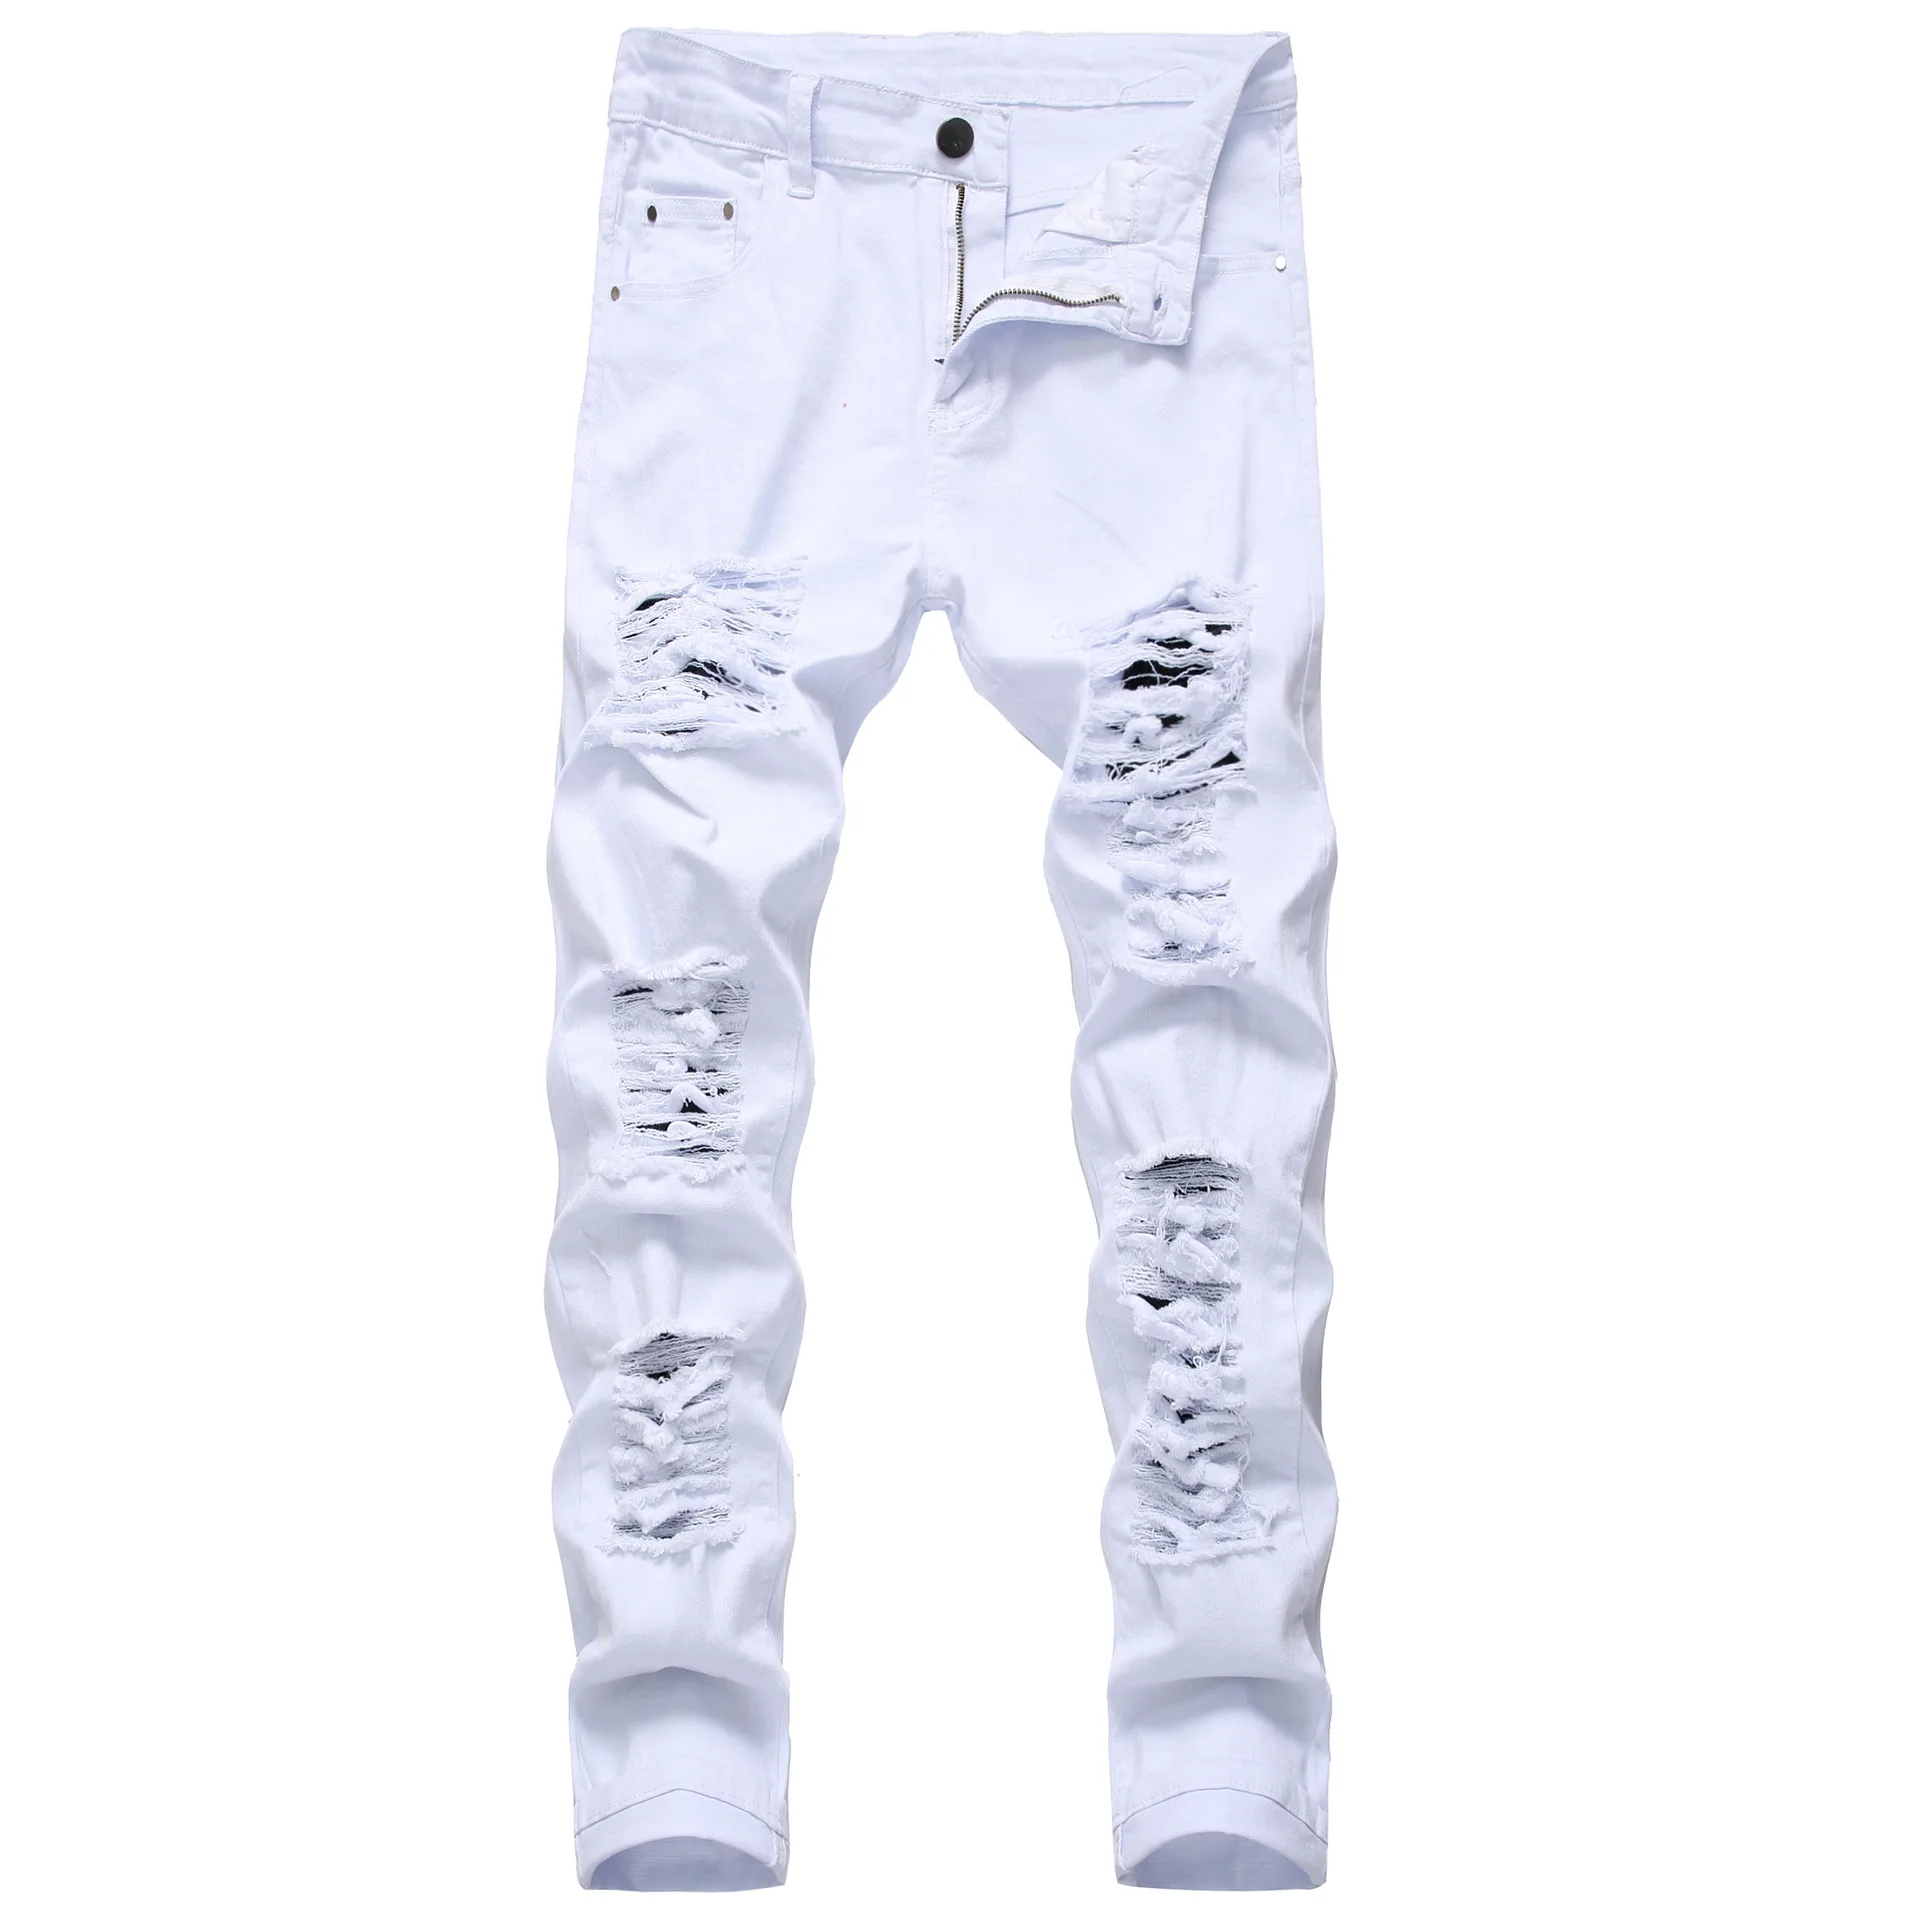 

Джинсы мужские рваные из хлопка, повседневные облегающие брюки скинни, модные Стрейчевые брюки из денима в стиле хип-хоп, белые